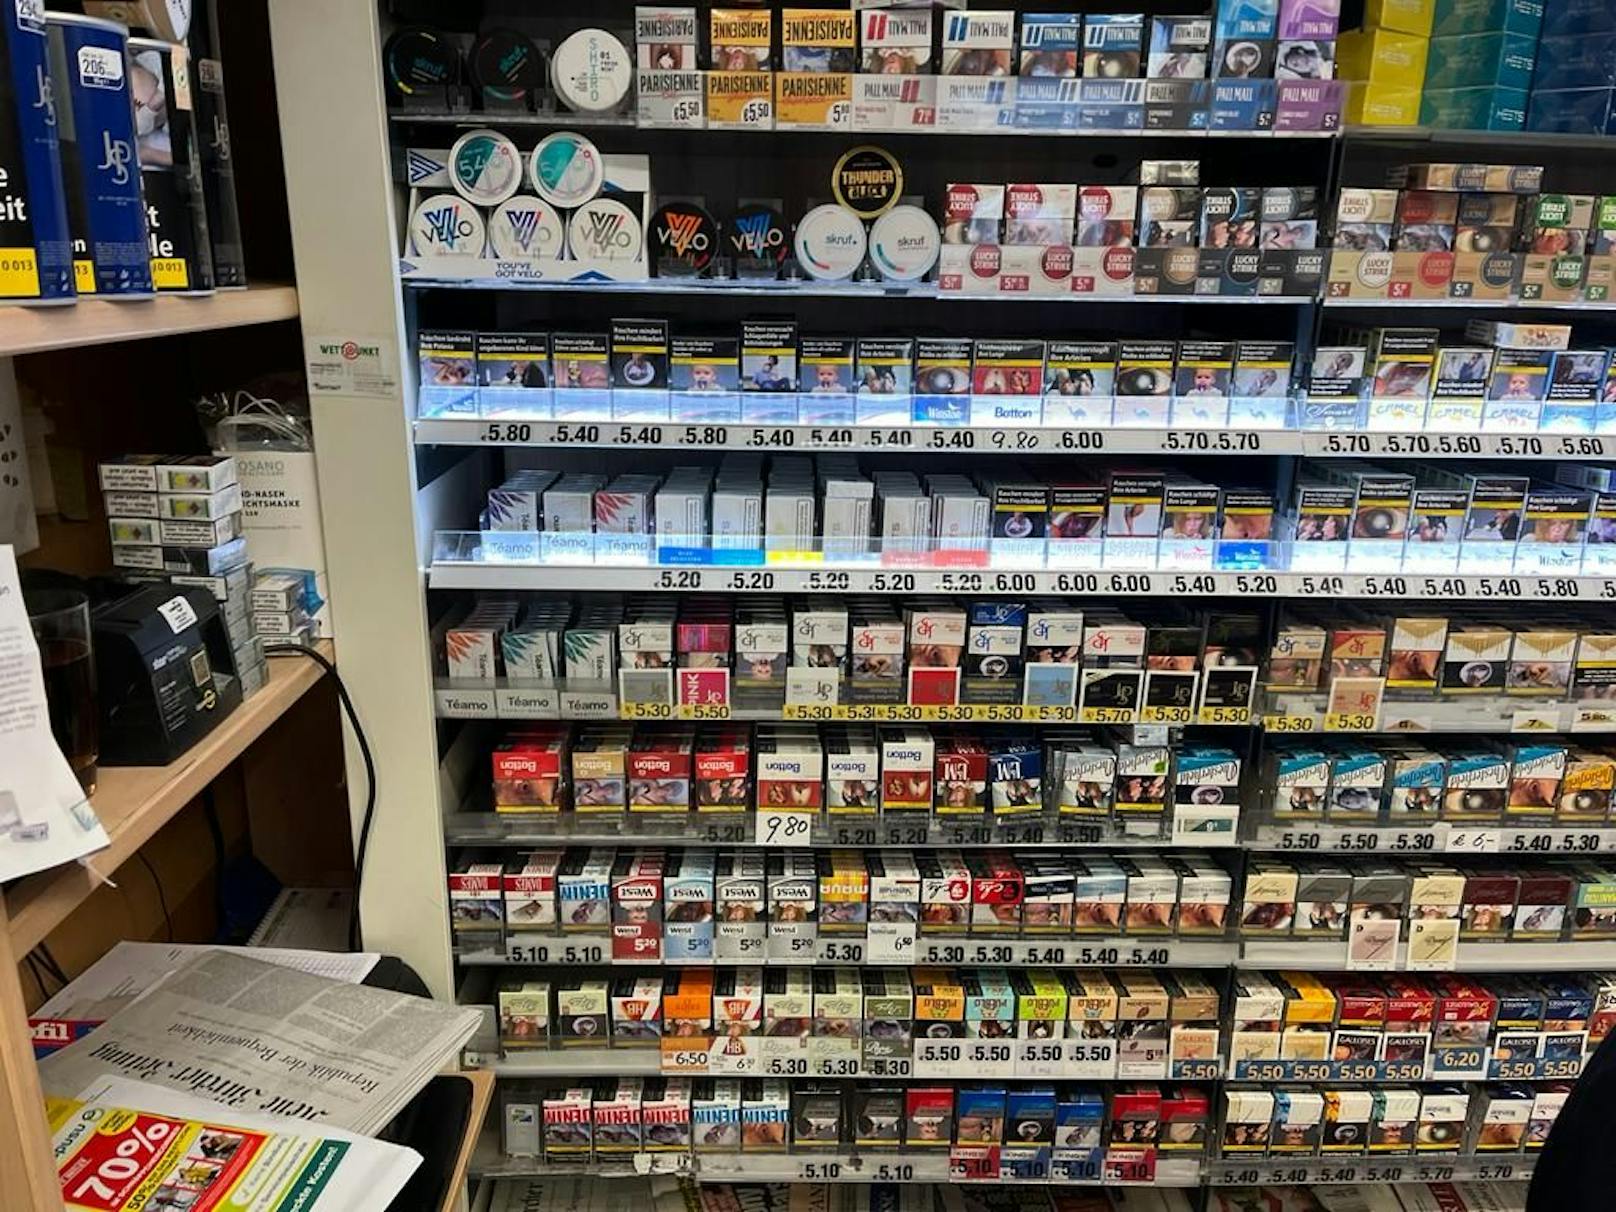 Adieu billige Tschick: Ab 1. März werden viele Zigarettenmarken um 30 Cent teurer